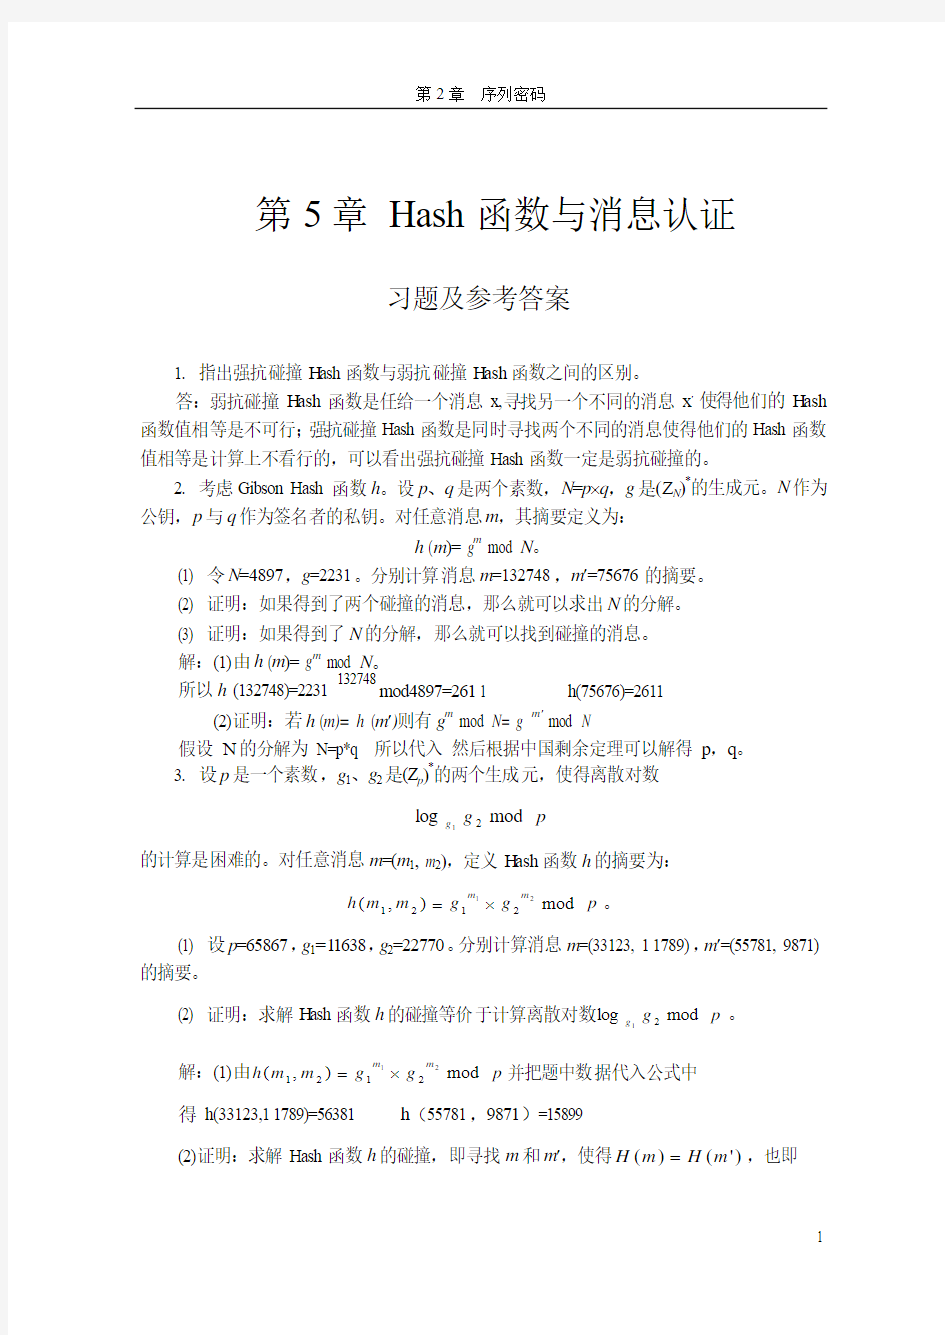 现代密码学-第5章Hash函数与消息认证习题与解答-20091202